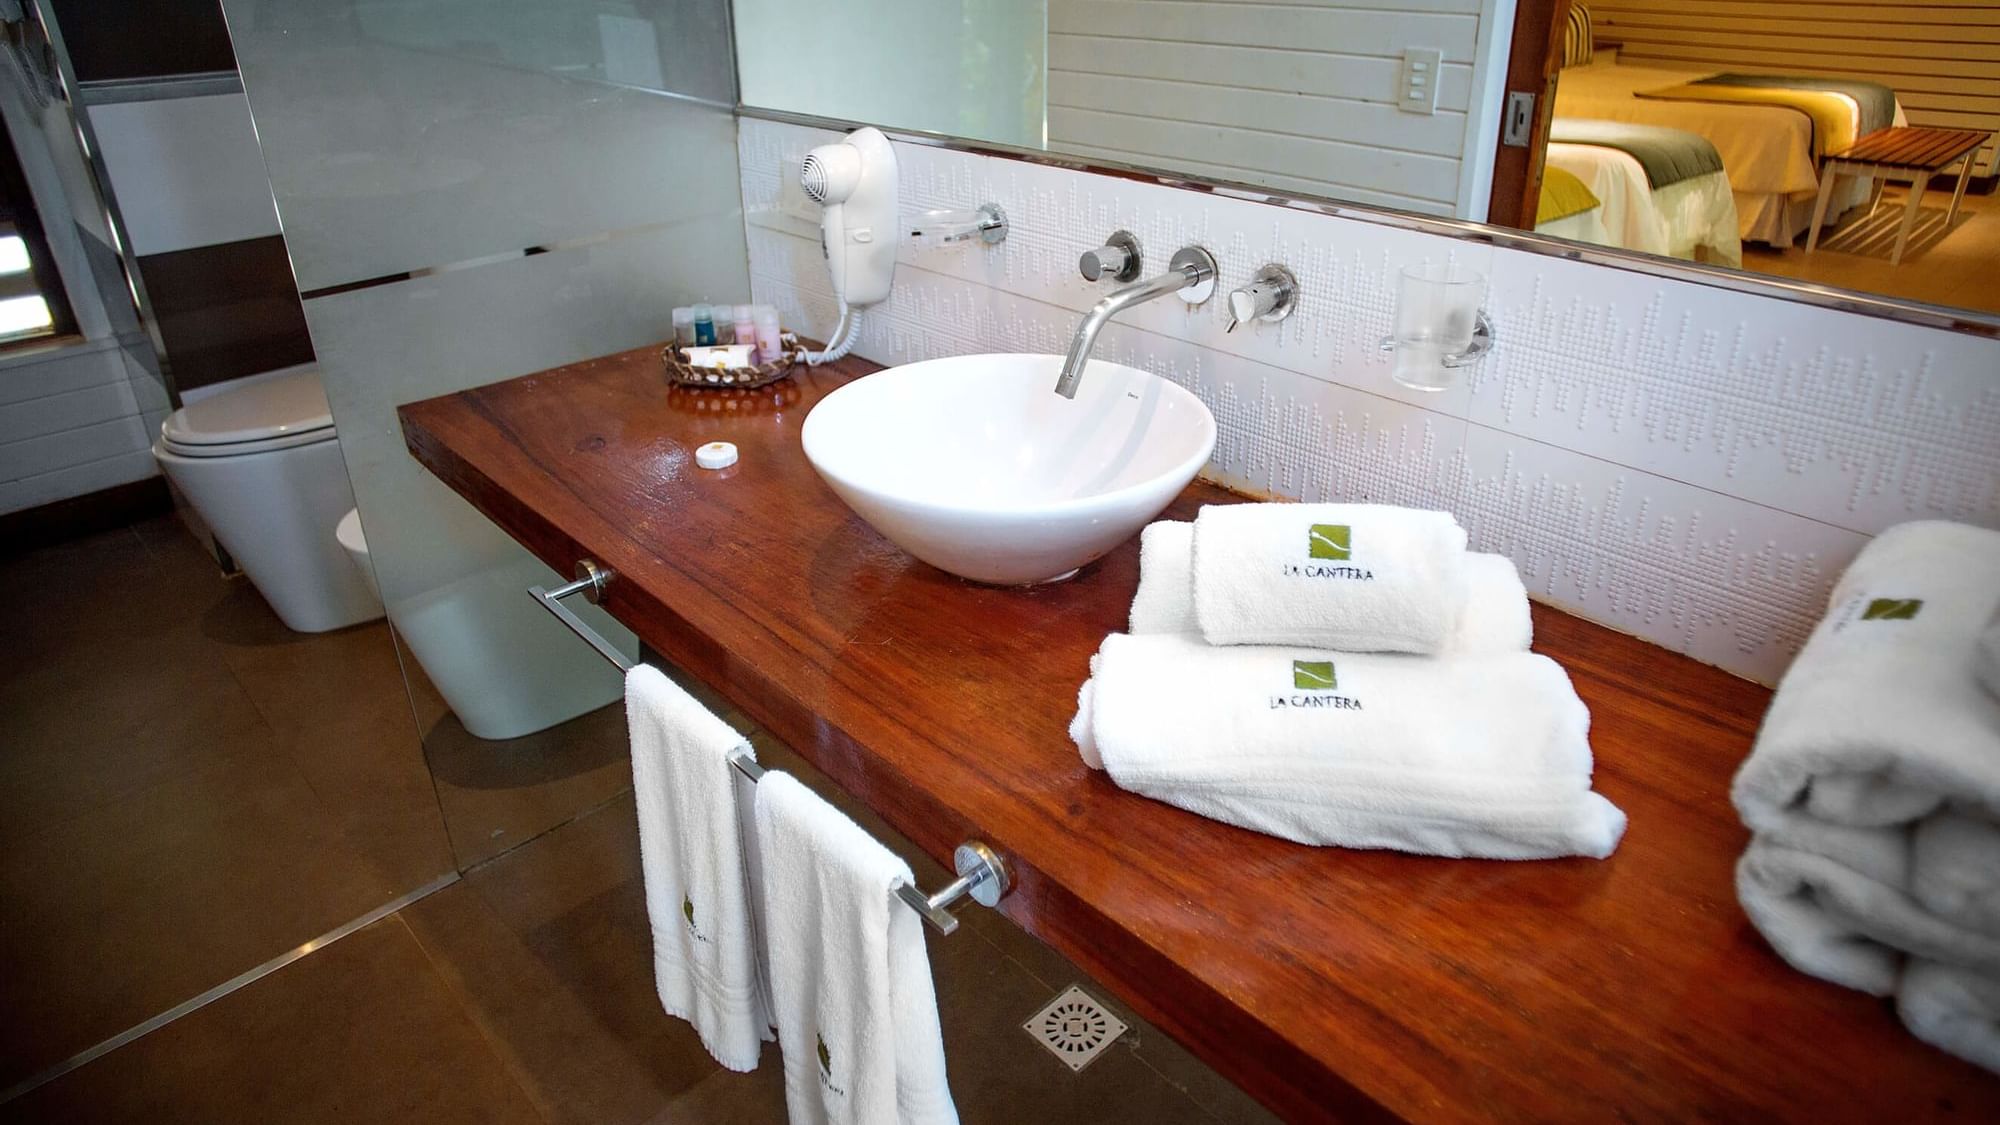 Towel rolls by the bathroom Vanity in Vila Room at DOT Hotels